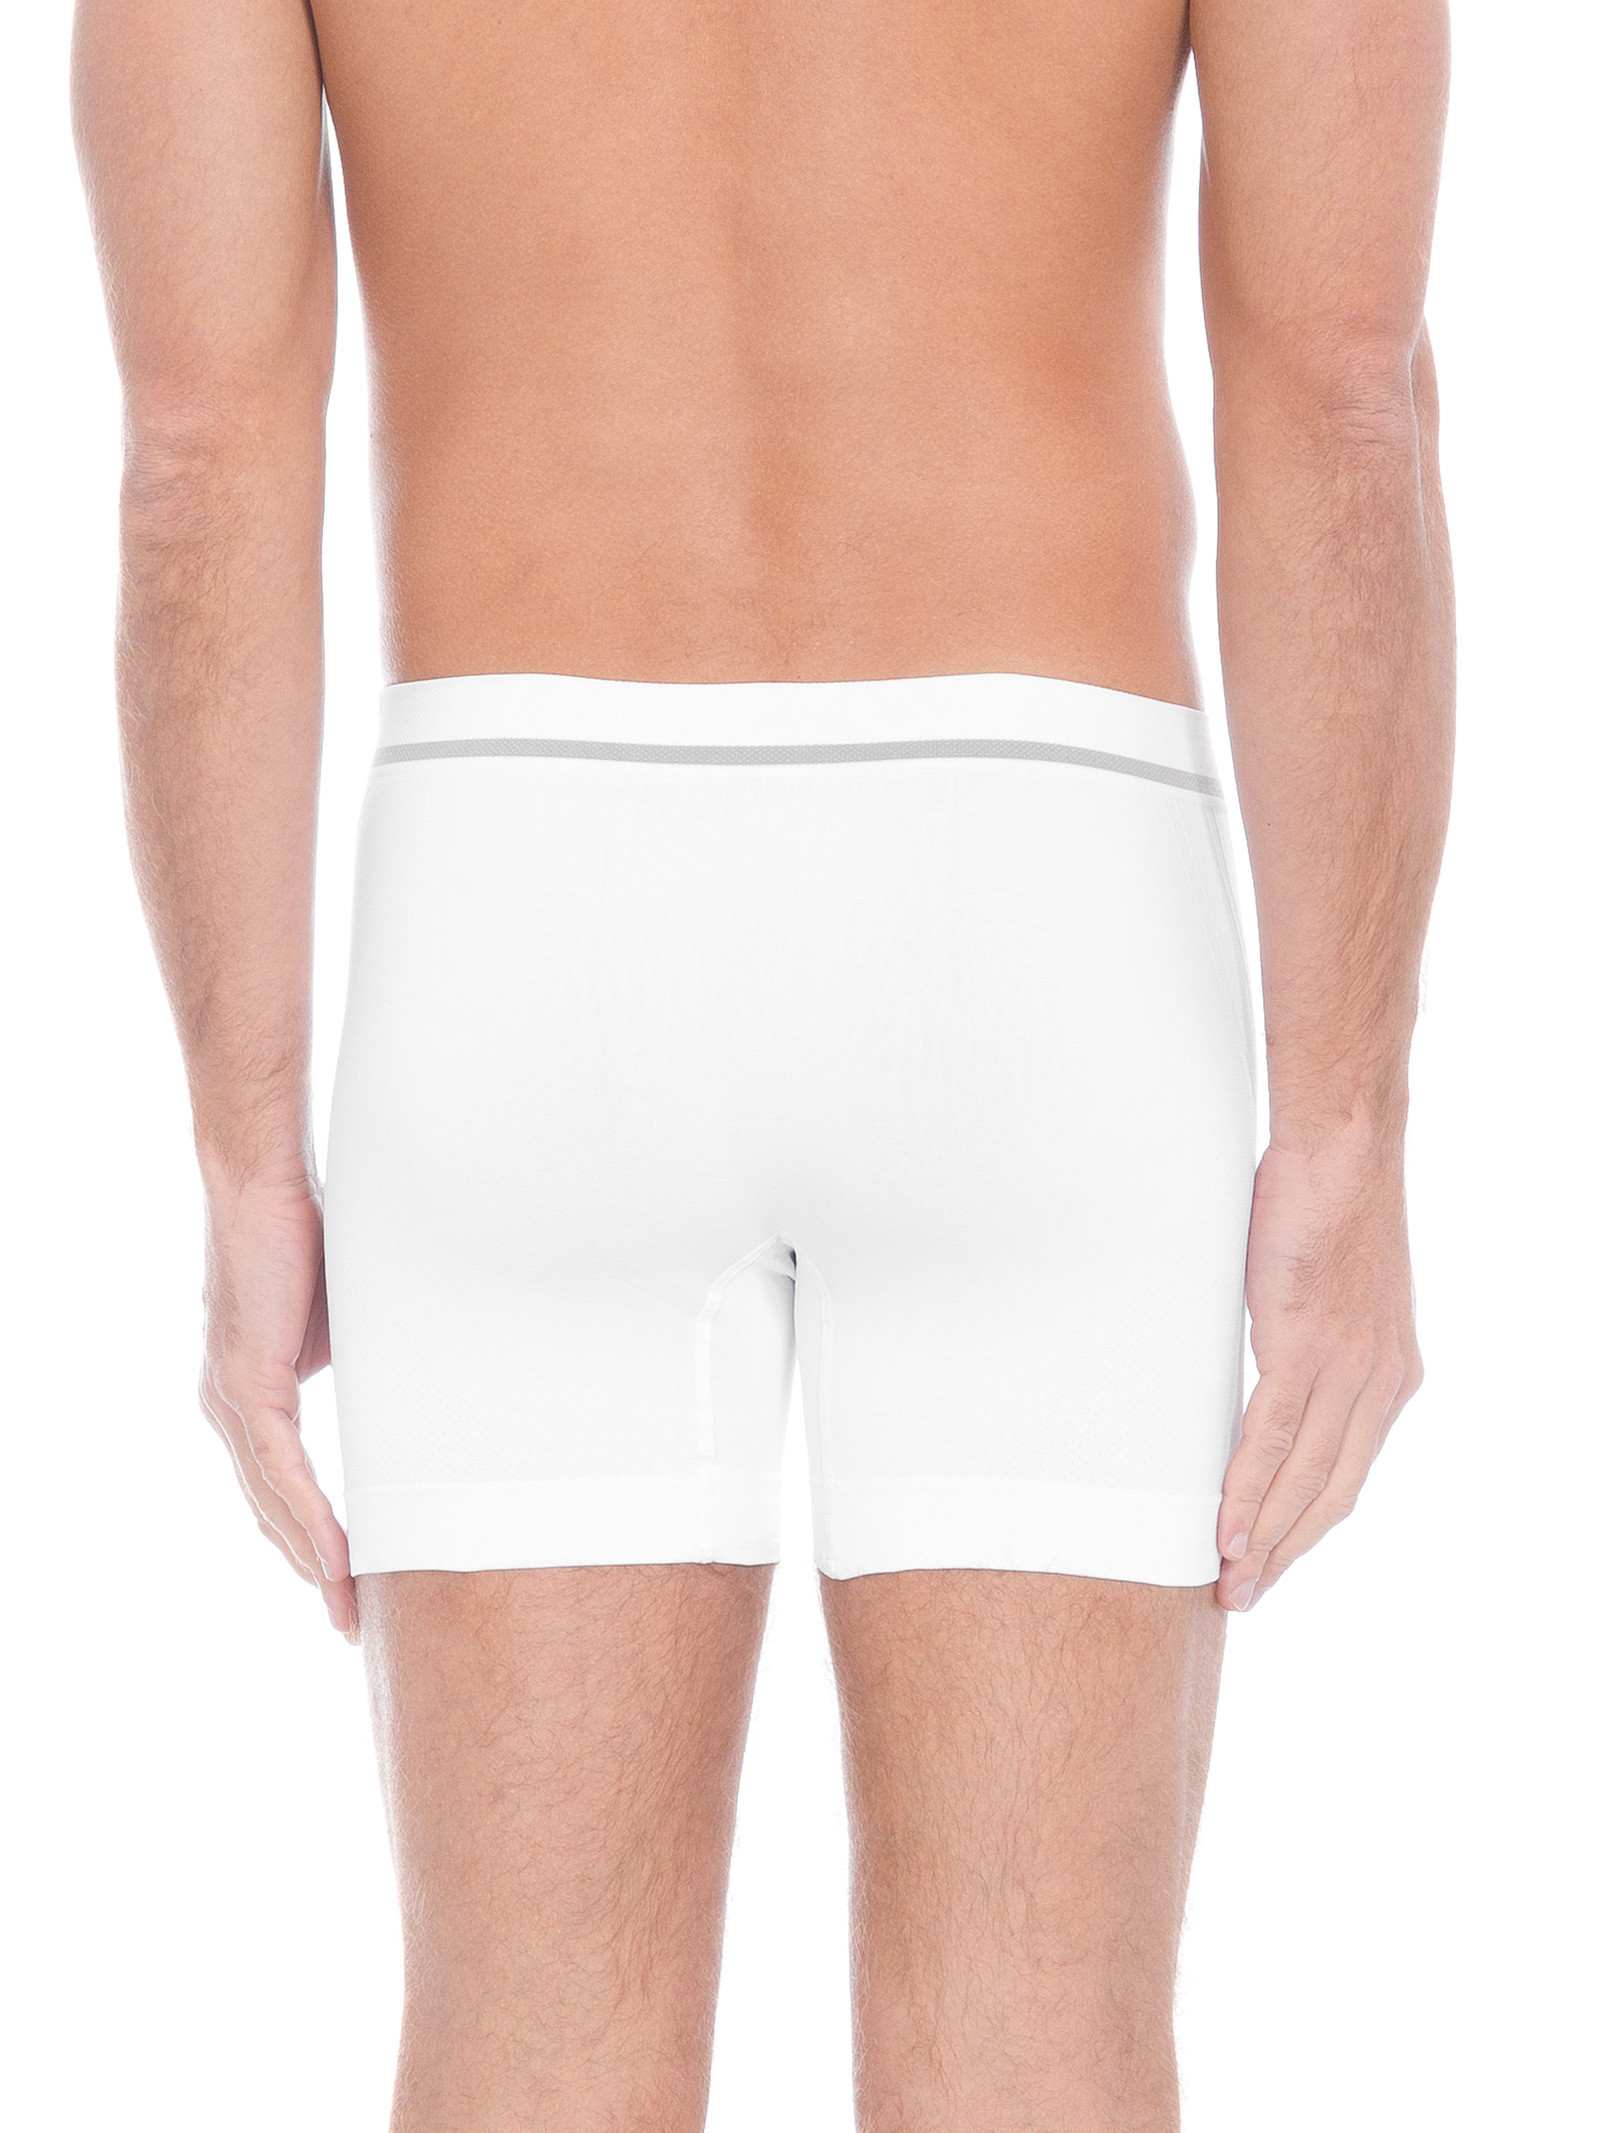 Cueca Long Boxer Cotton - Calvin Klein Underwear - Preto - Oqvestir